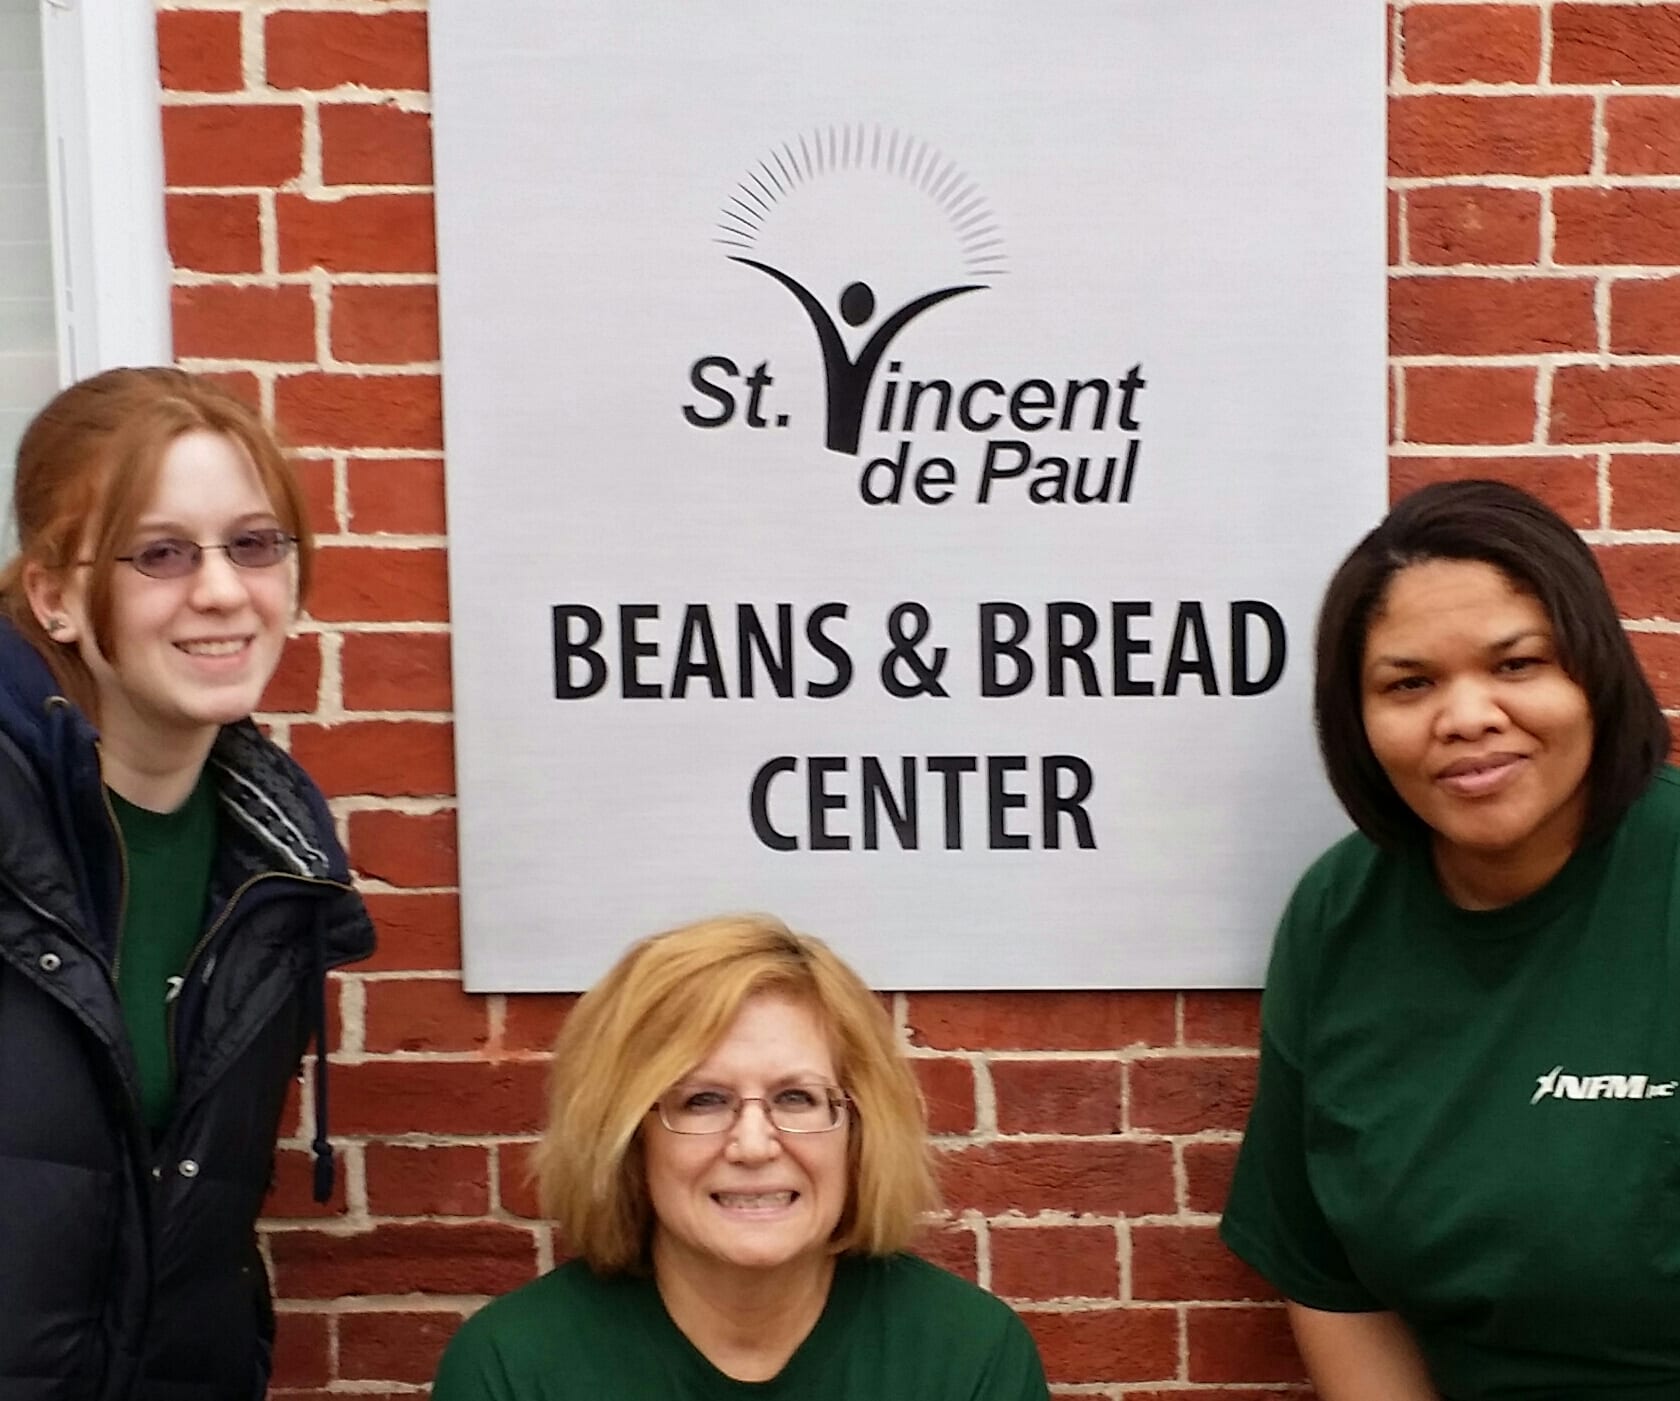 S. Vincent de Paul Beans & Bread Center